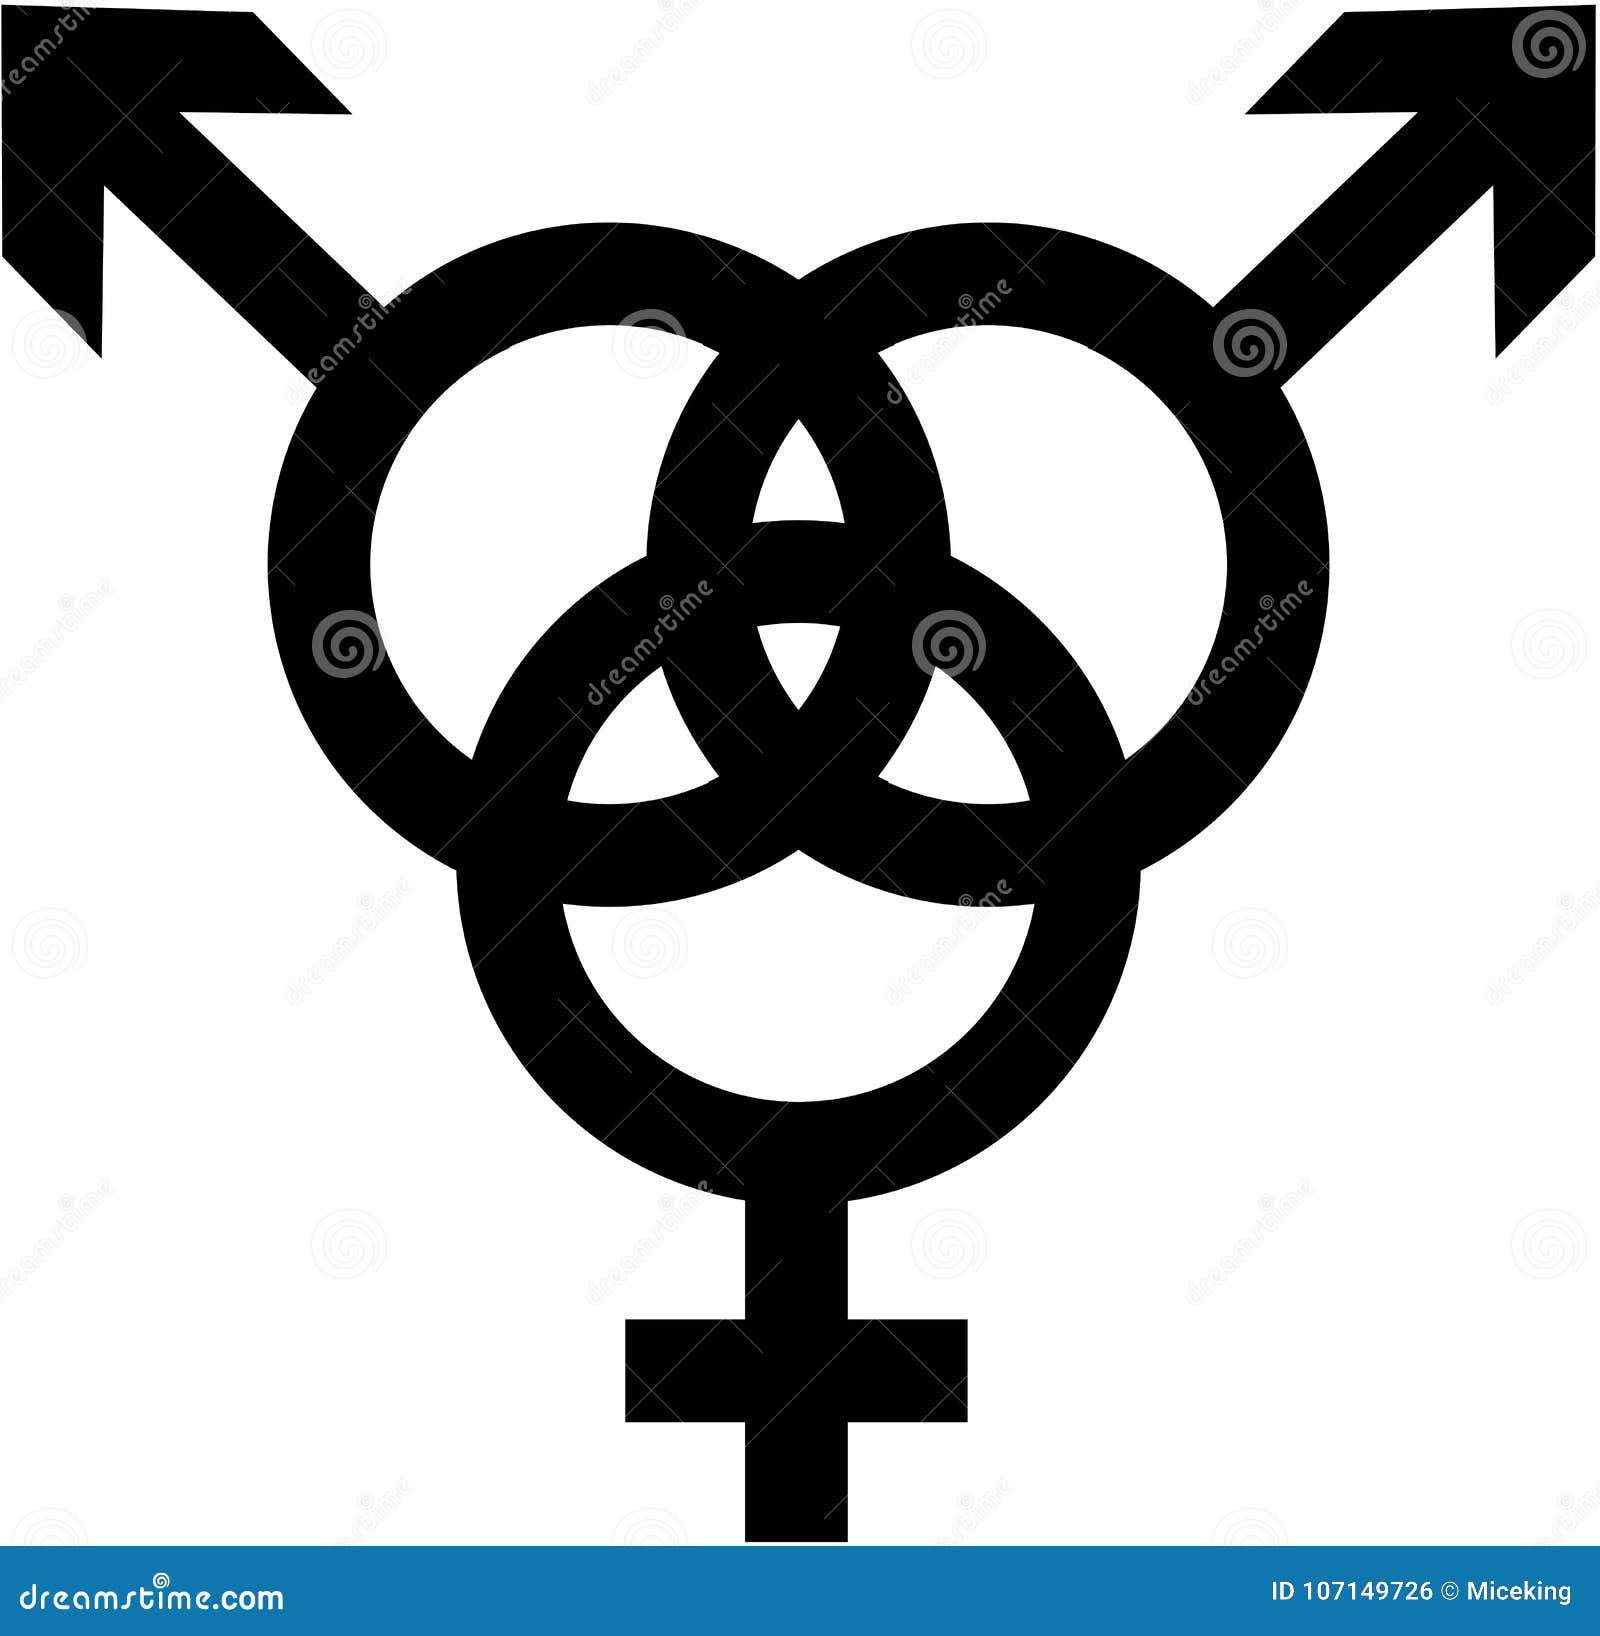 bisexual - man, woman, man